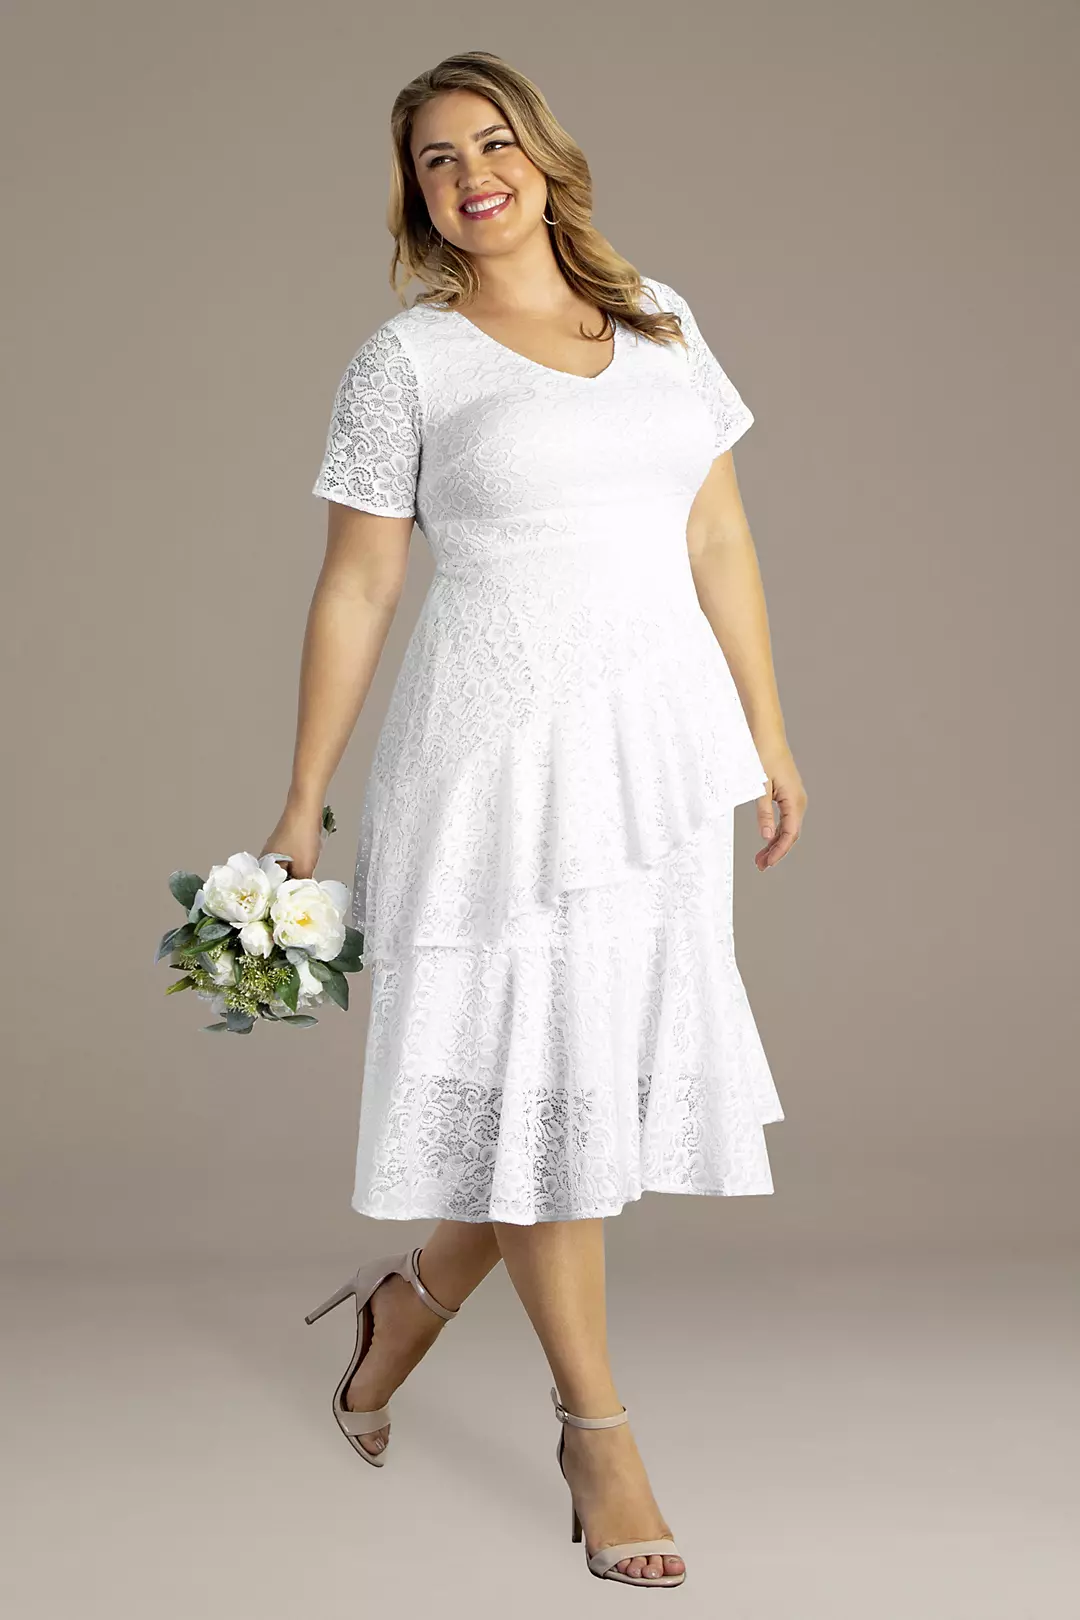 Harmony Tiered Lace Plus Size Short Wedding Dress Image 2